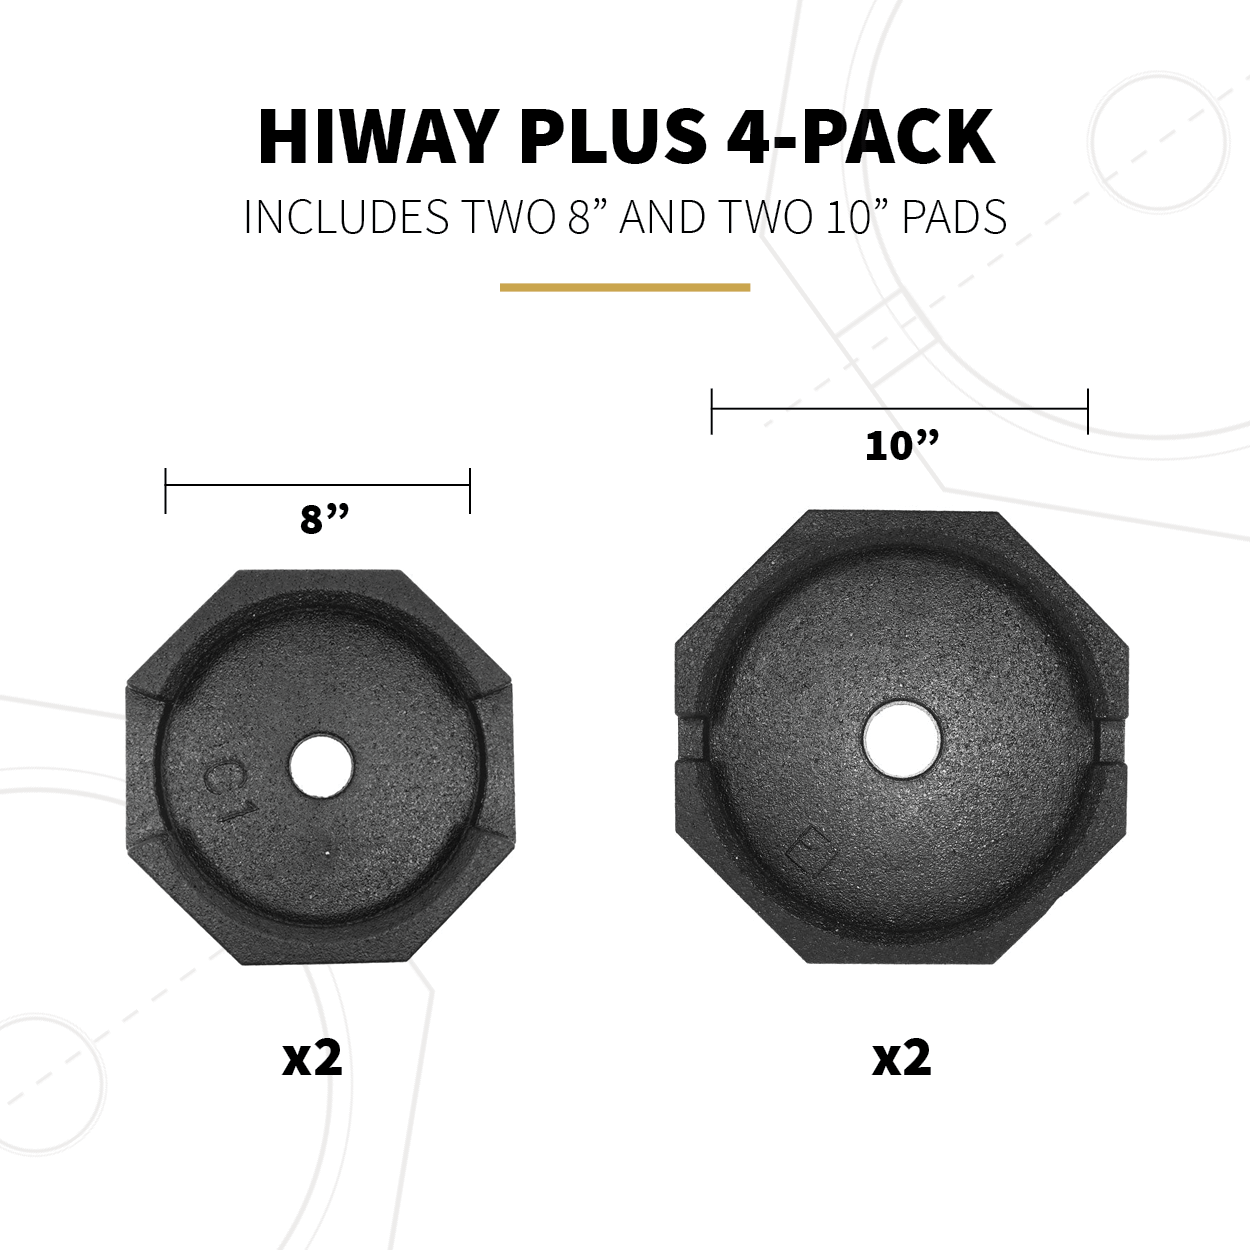 HiWay Plus 4-Pack Specs